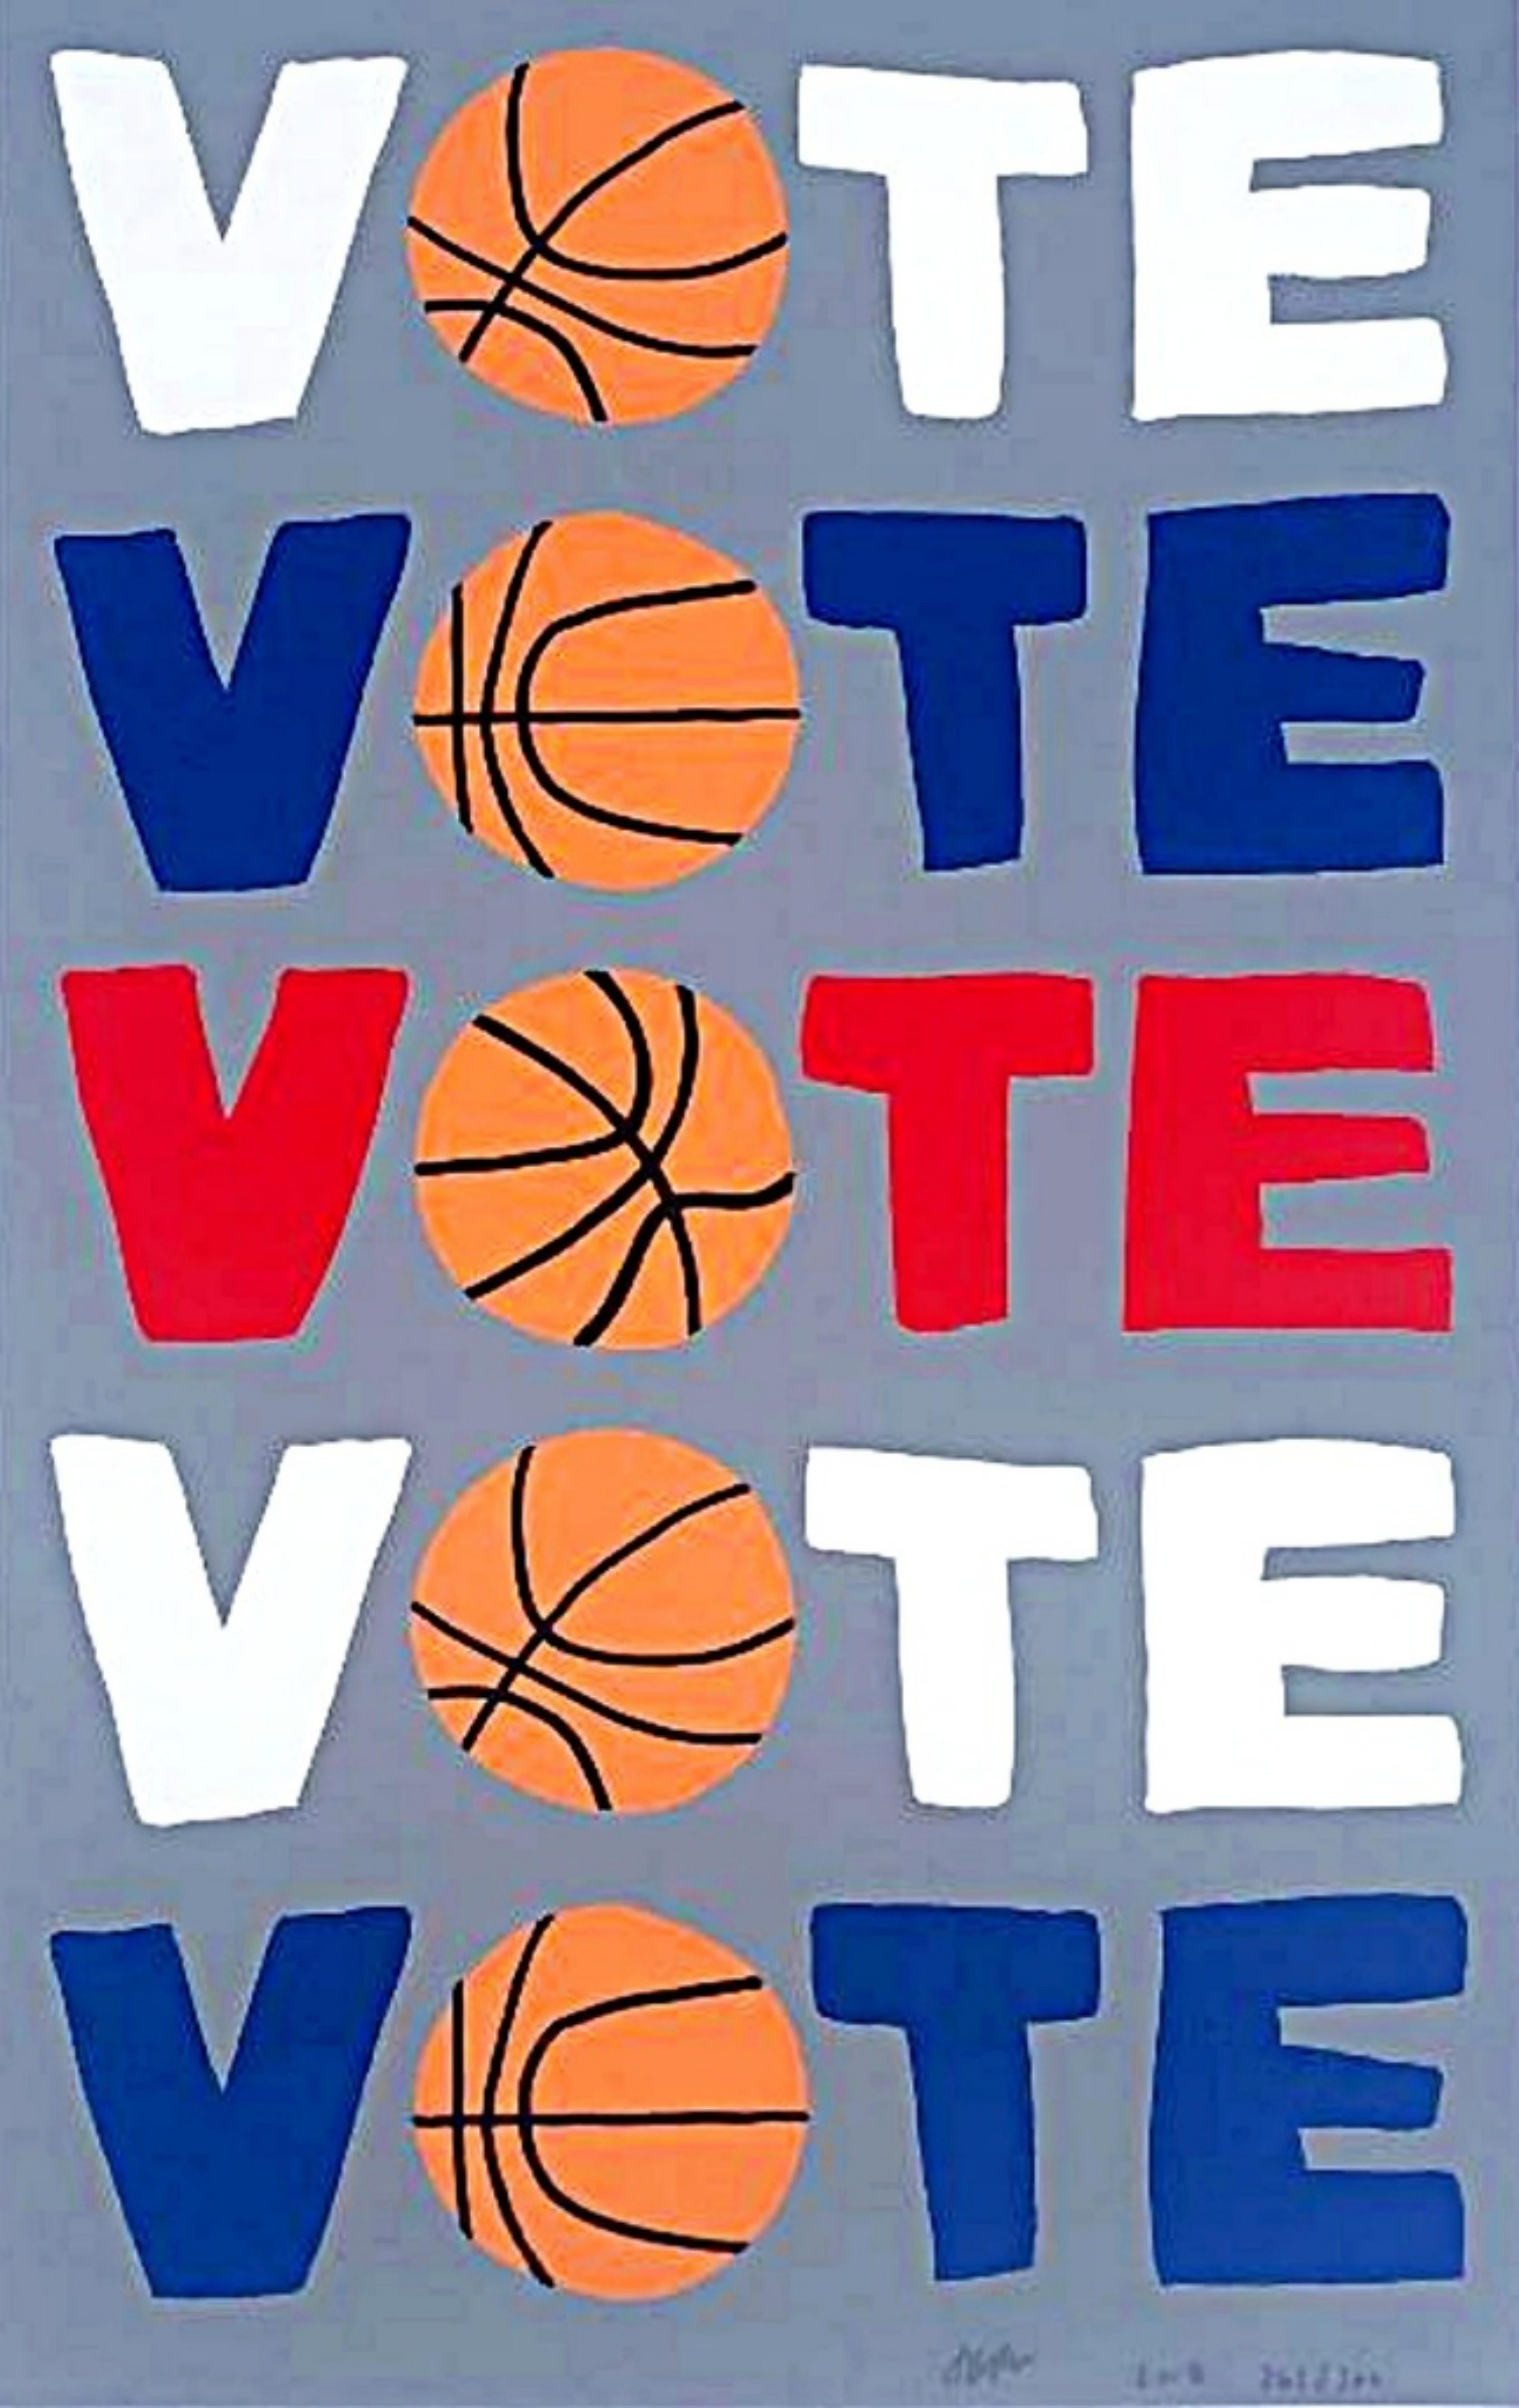 Figurative Print Jonas Wood - VOTE, sérigraphie politique en édition limitée avec la célèbre image de basket-ball de l'artiste